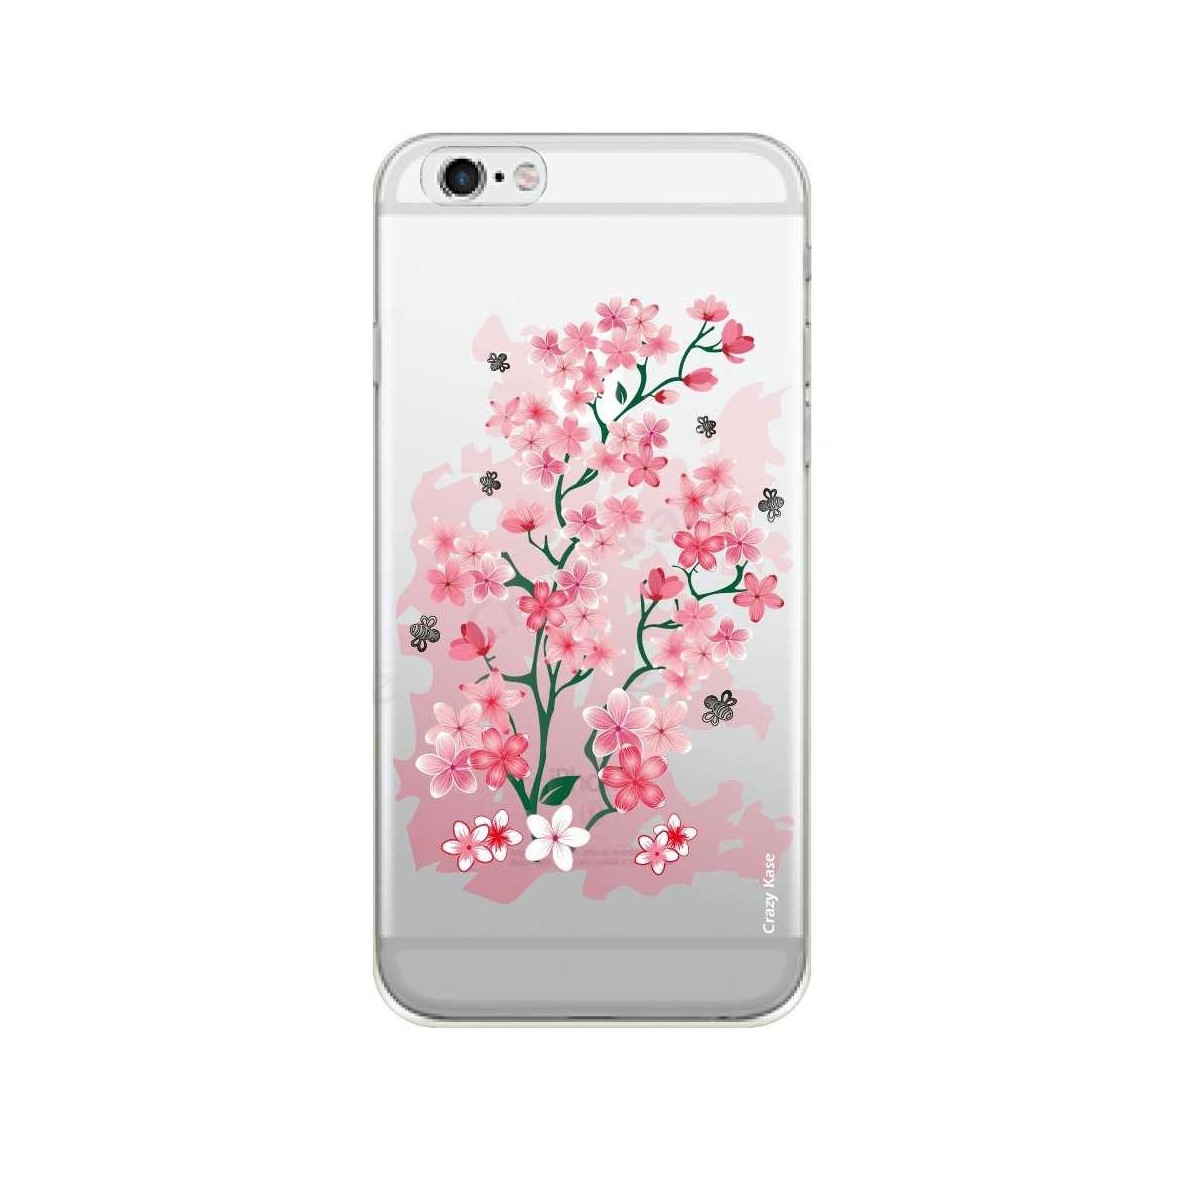 Coque iPhone 6 / 6s Transparente souple motif Fleurs de Cerisier - Crazy Kase